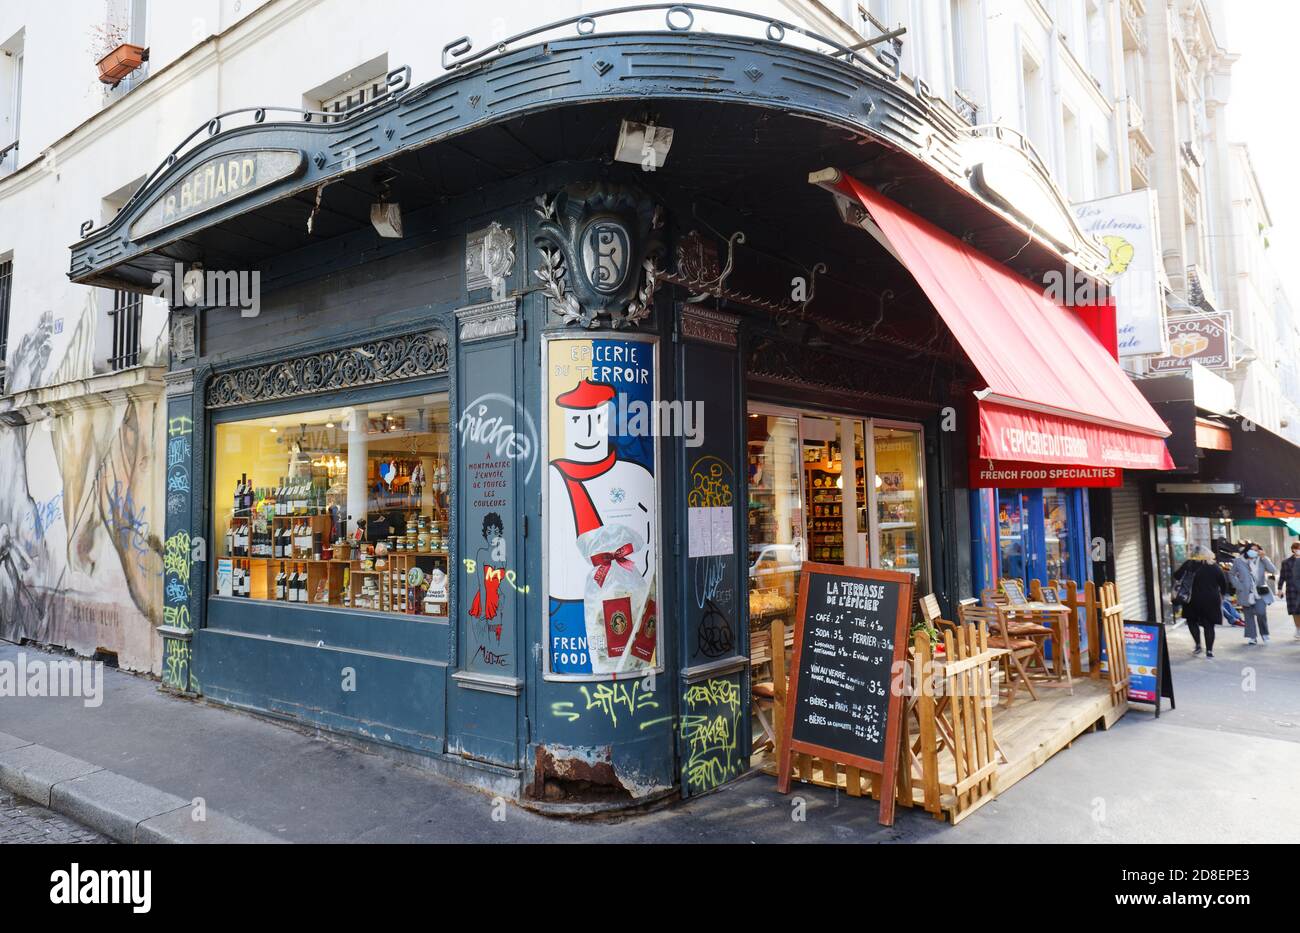 Le magasin gastronomique d'époque Epicerie du terroir est situé dans la rue Lepic, dans le quartier de Montmartre, à Paris, en France. Banque D'Images